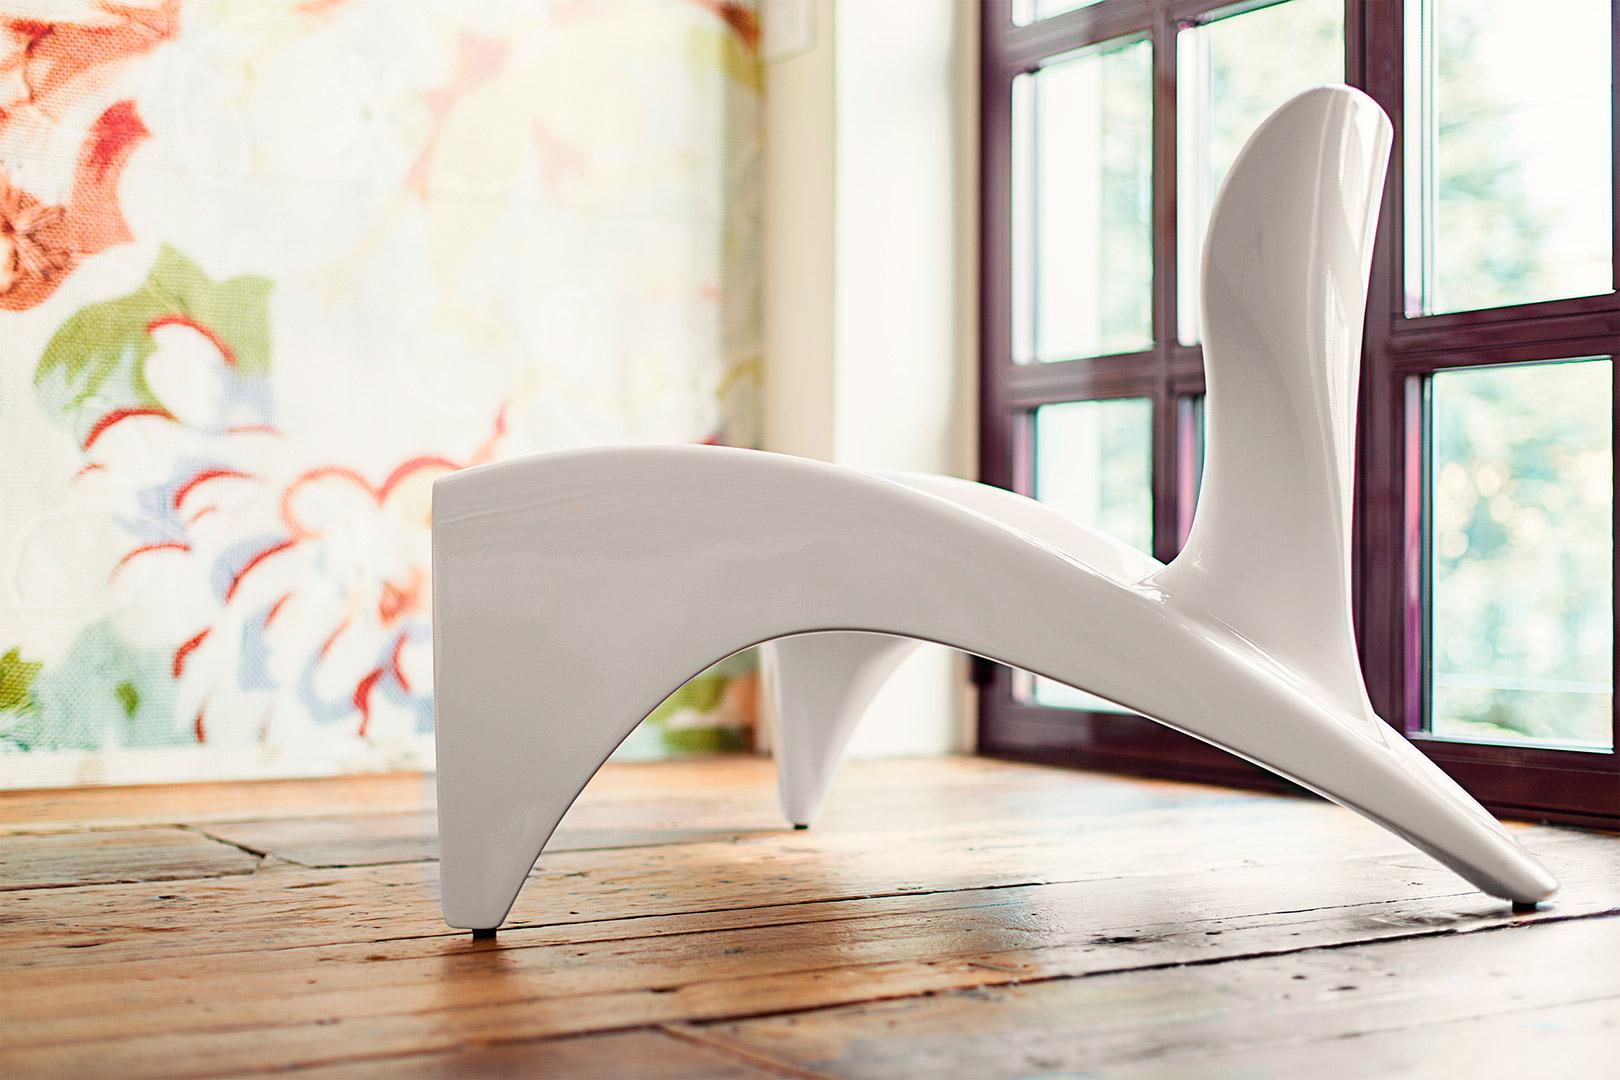 Glänzend absolut weißer Isetta Low Chair von Marc Sadler
Abmessungen: T 86 x B 78 x H 62 cm. Sitzhöhe: 32 cm.
MATERIALIEN: Polyurethan.
Gewicht: 13 kg.

Erhältlich in verschiedenen lackierten Farbvarianten. Erhältlich in glänzenden oder matten